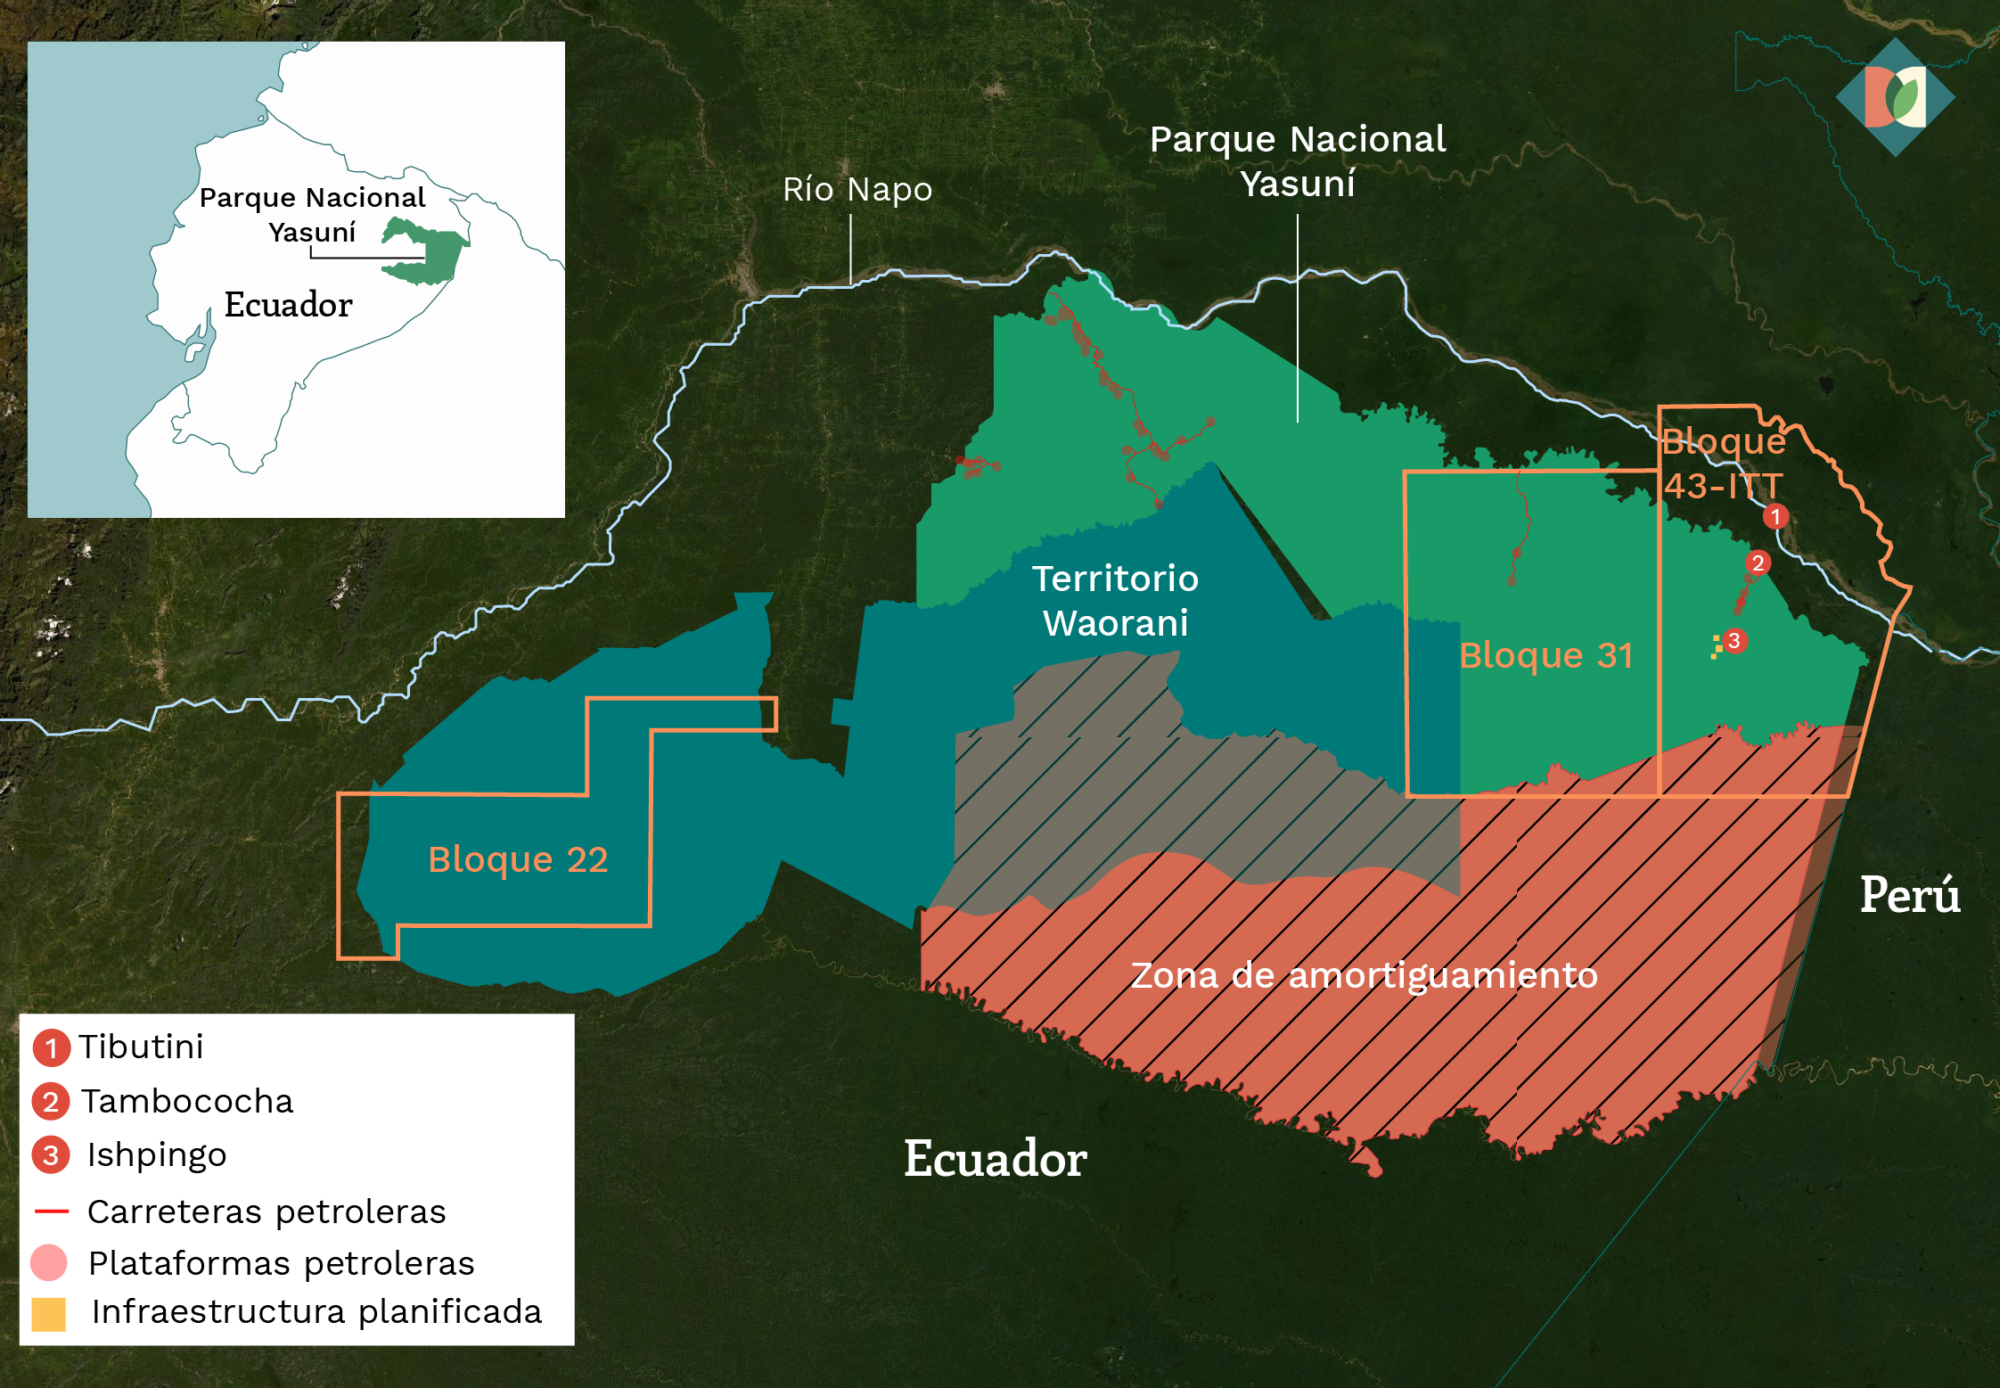 Mapa que muestra la ubicación del Parque Nacional Yasuní, los bloques petrolíferos 22, 31 y 43-ITT, la zona de amortiguamiento y el territorio Waorani